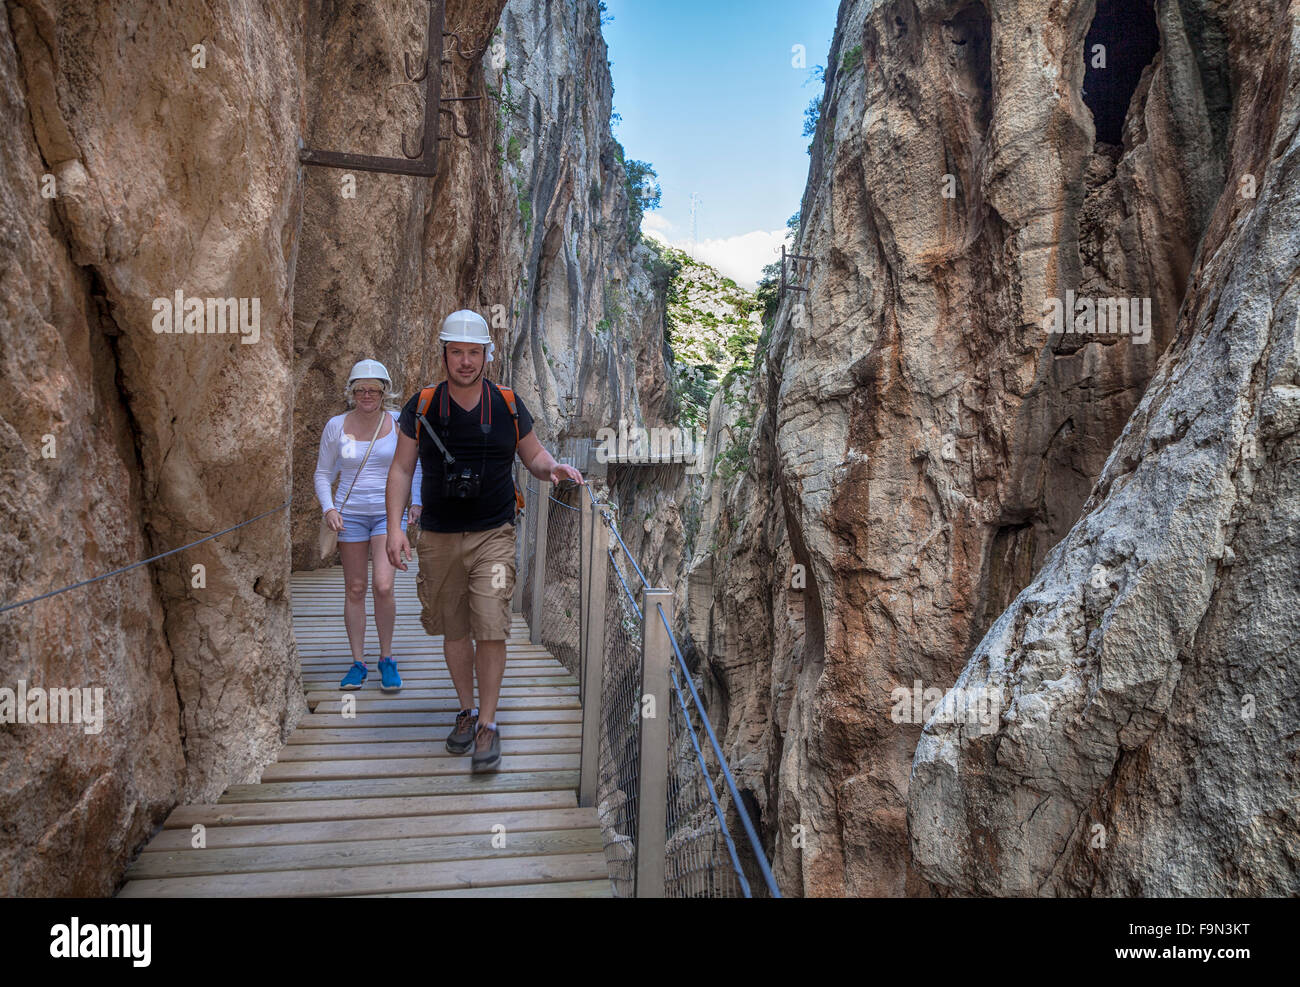 Los paseantes sobre el Caminito del Rey, pasarela, anclado a las escarpadas paredes de un angosto desfiladero de El Chorro, Málaga, Andalucía, España. Foto de stock